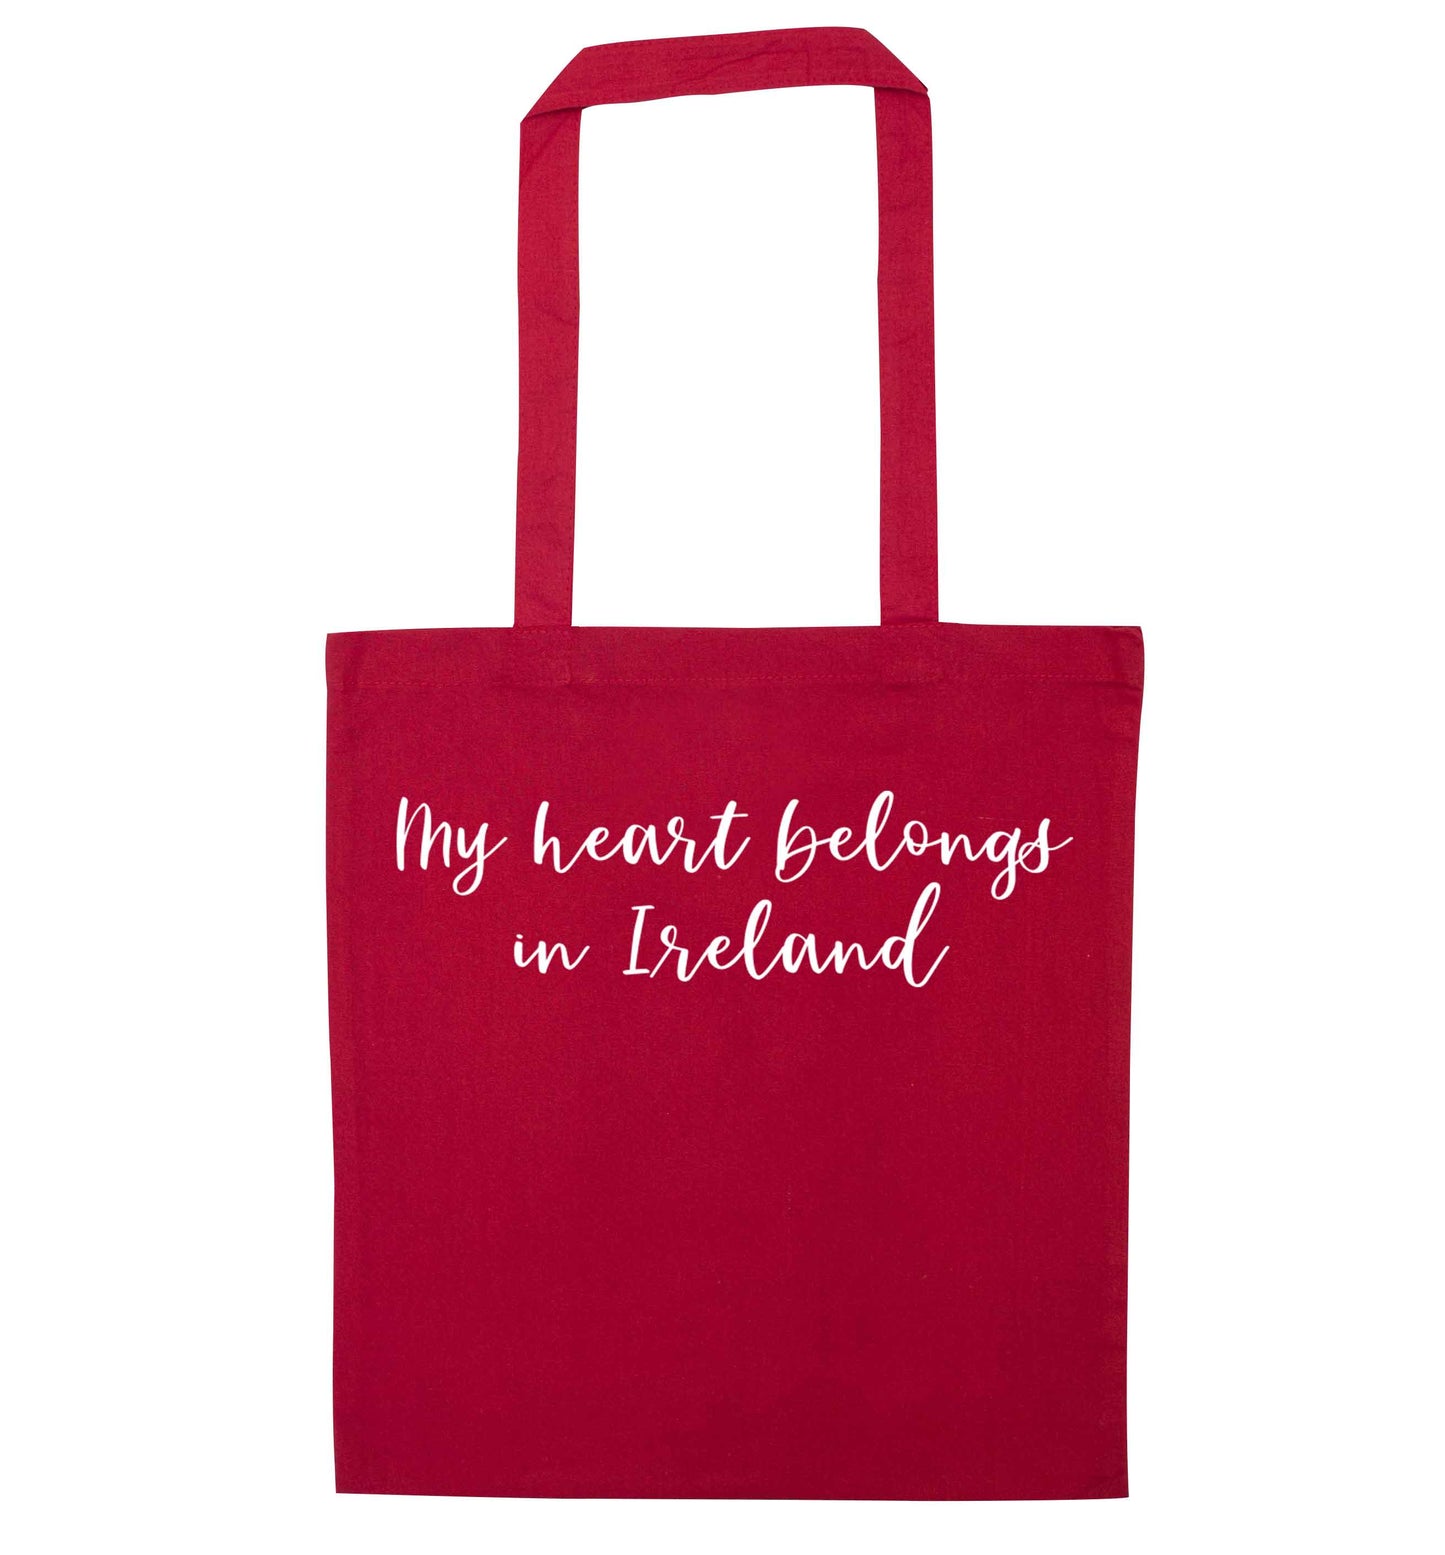 My heart belongs in Ireland red tote bag